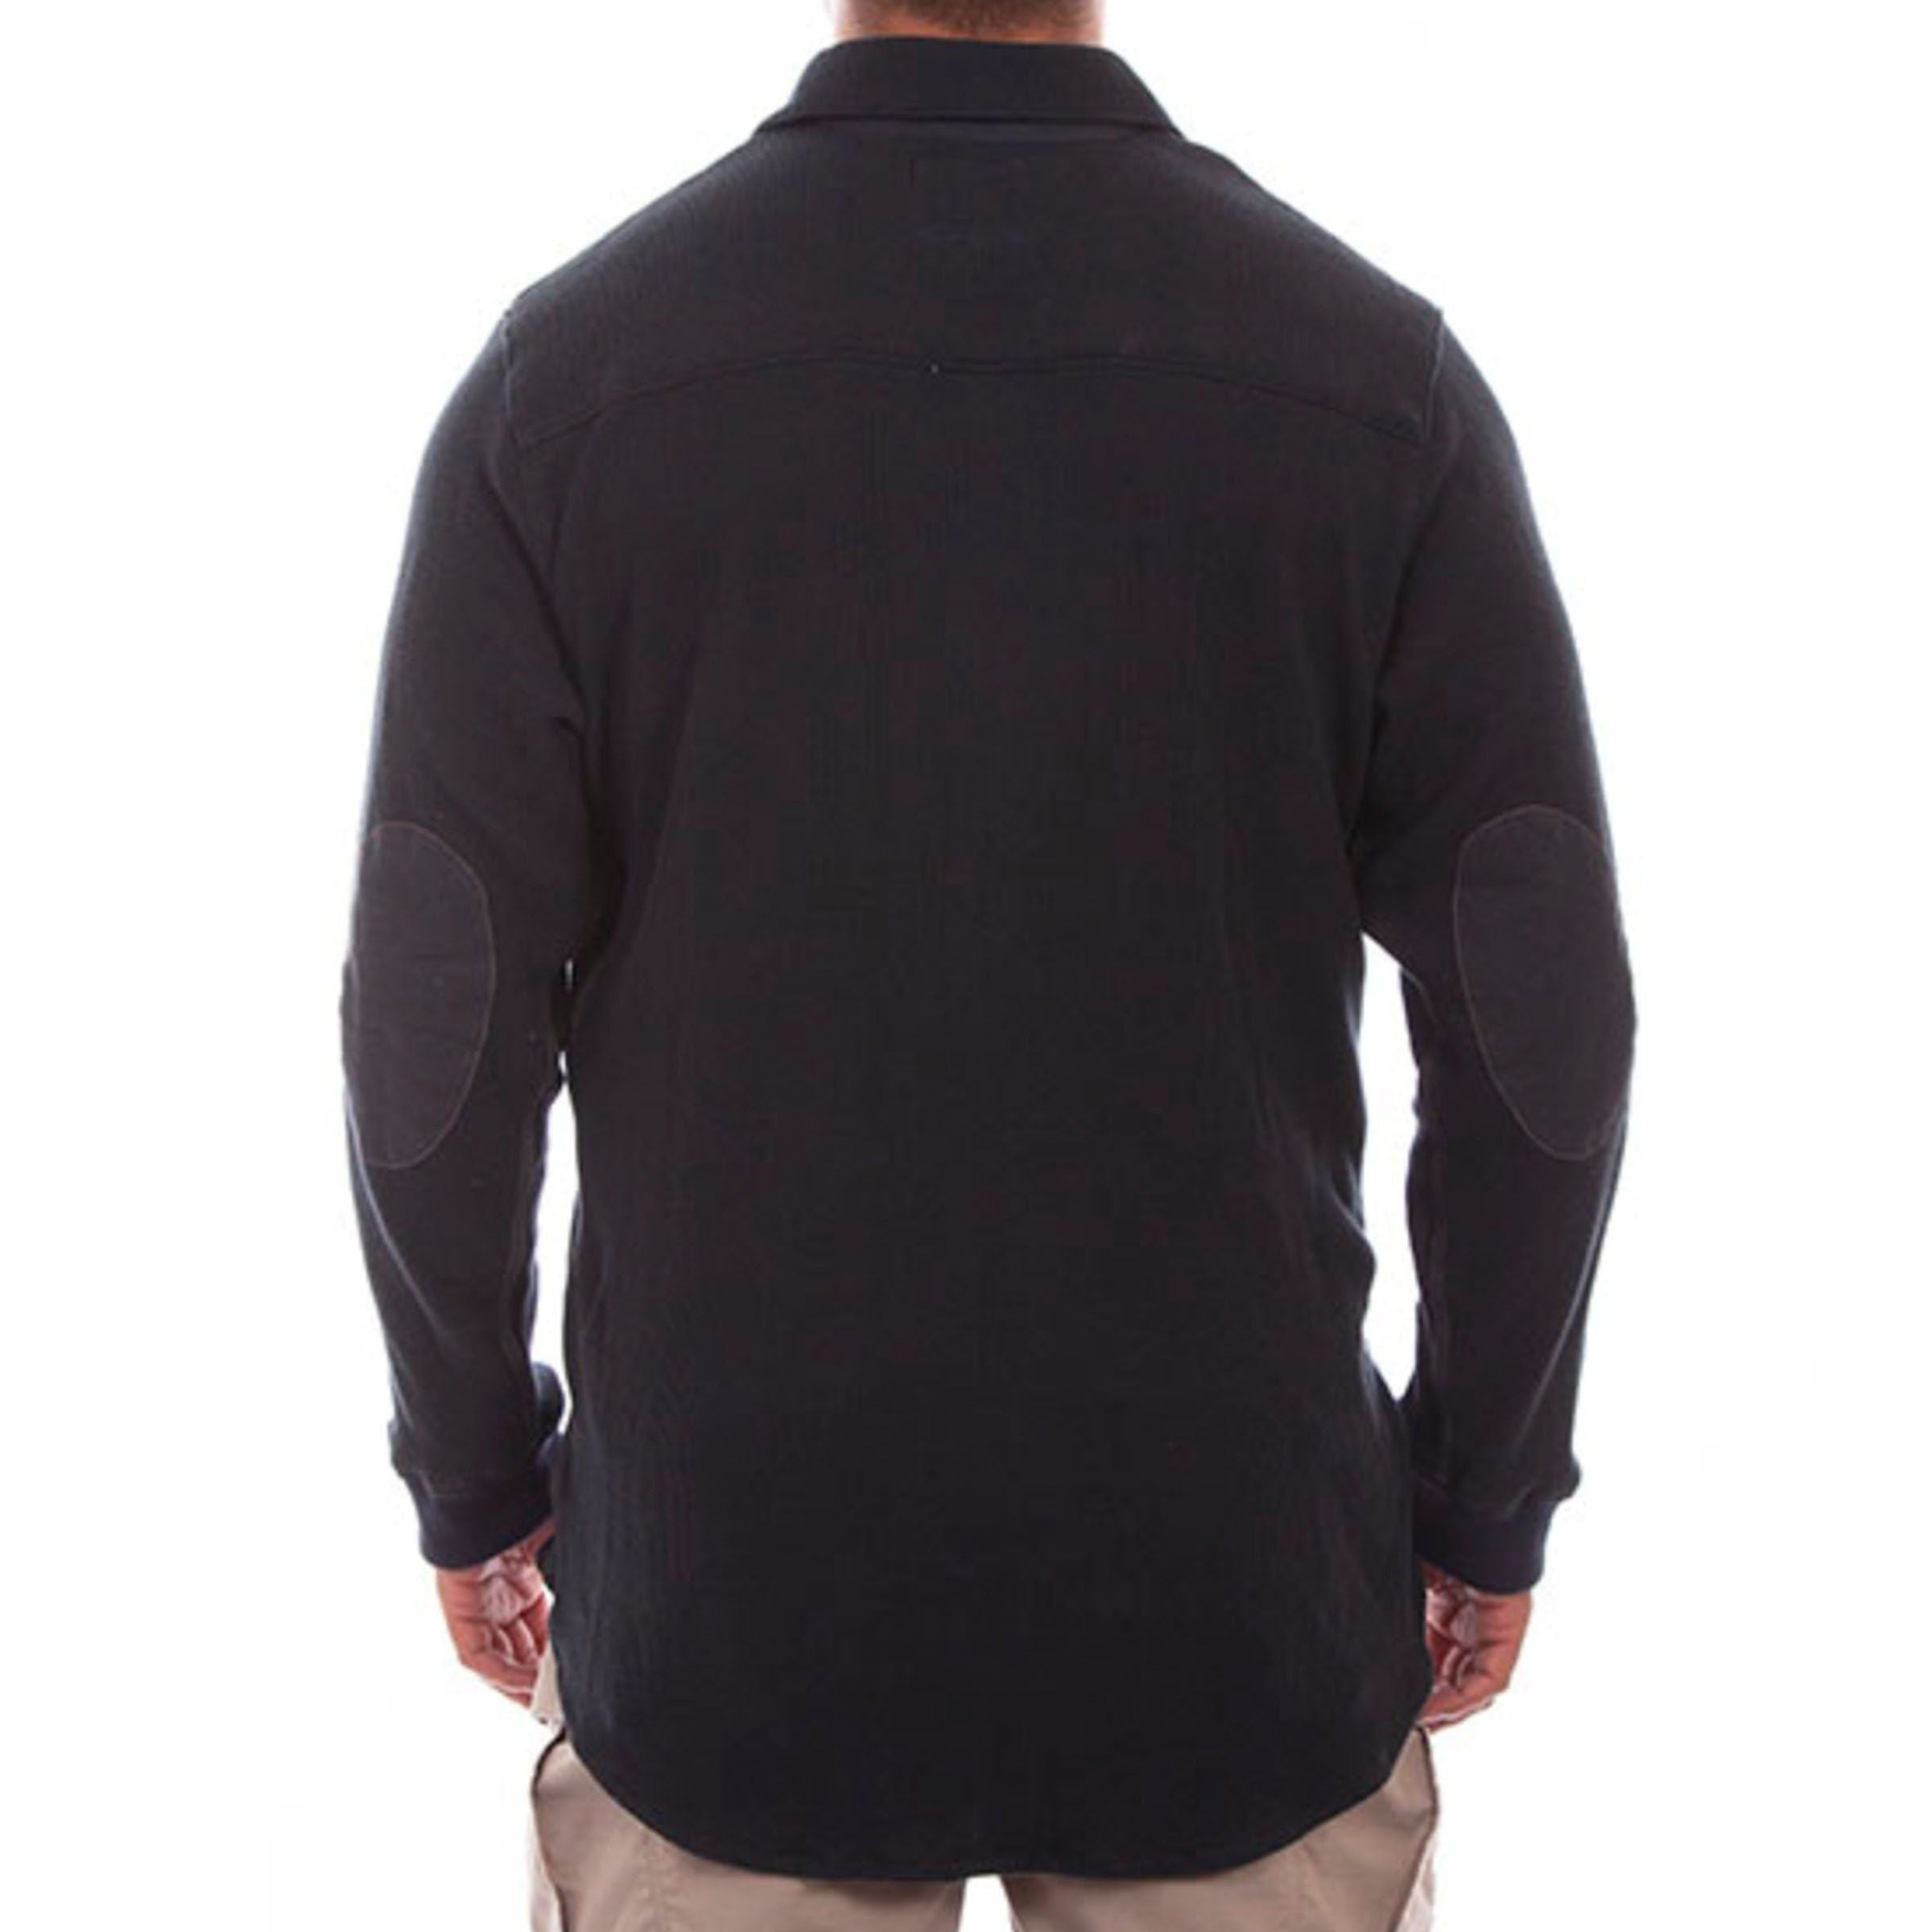 Black Thermal Button-Down Shirt - SHSY3